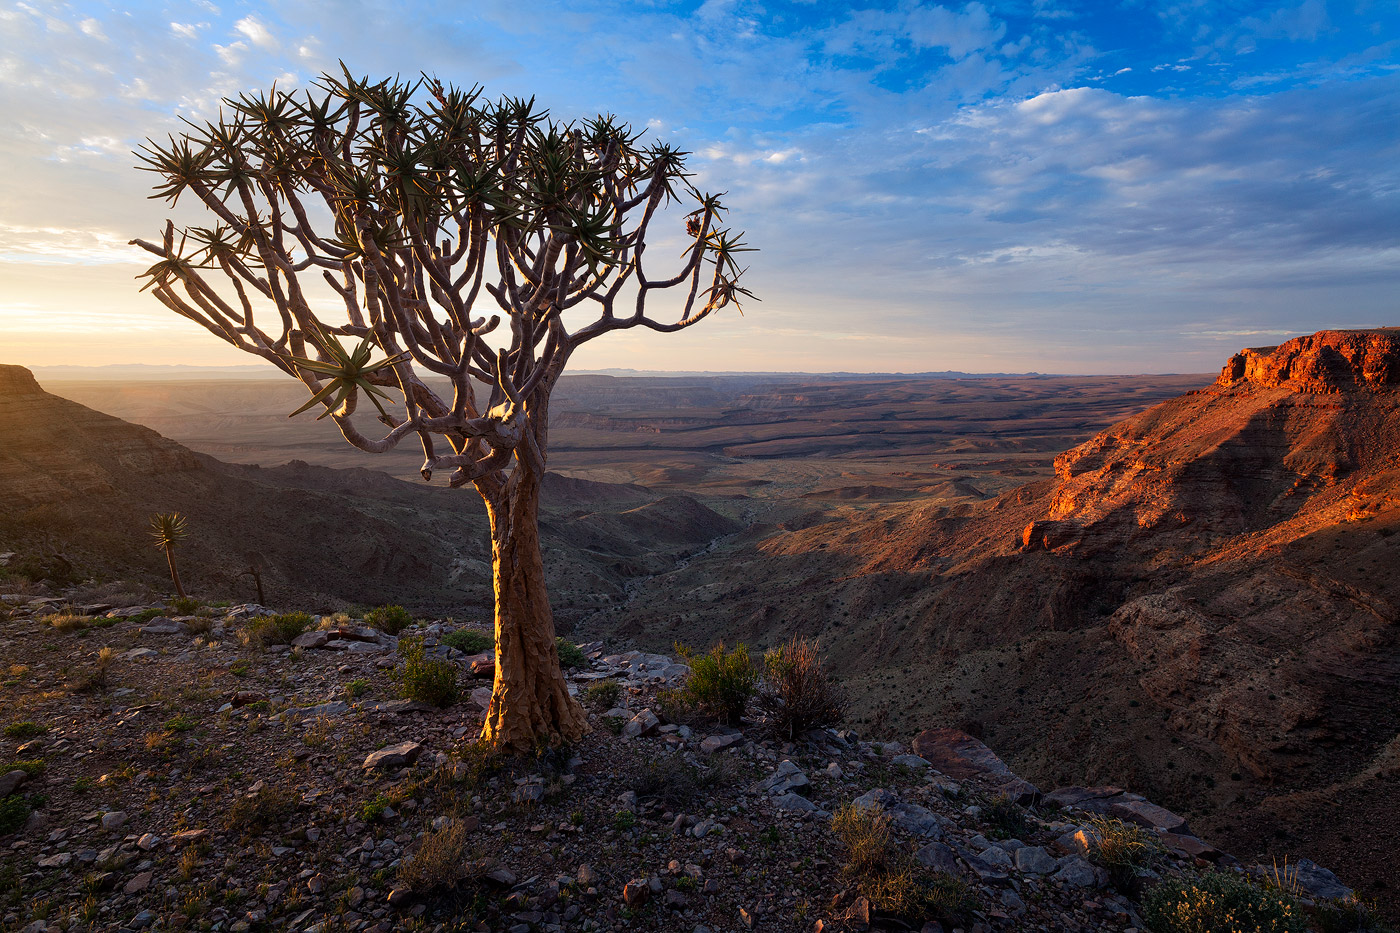 絵画のような絶景！ナミビアの絶景を味わえるおすすめ観光スポット4選